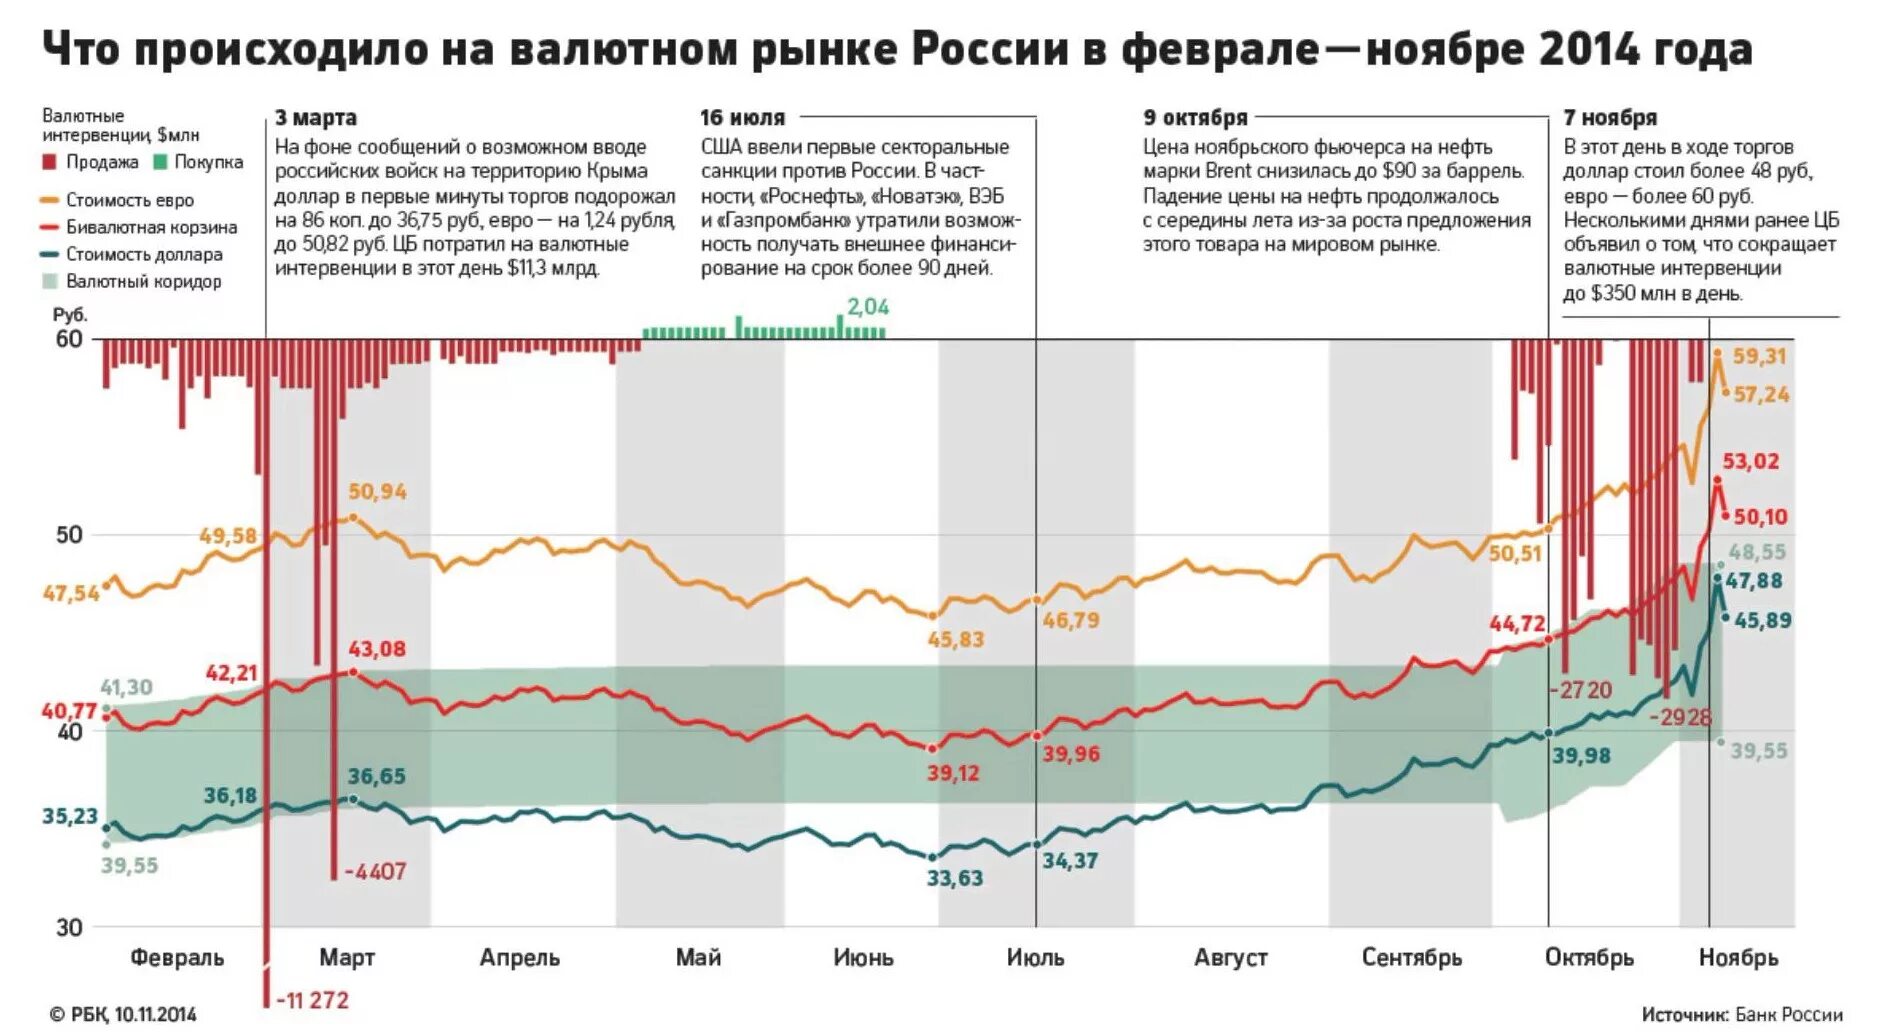 Курс валют. Валютный коридор рубля в 2014. Валютный курс рубля. Банк России на валютном рынке. Сравнение курсов рубля